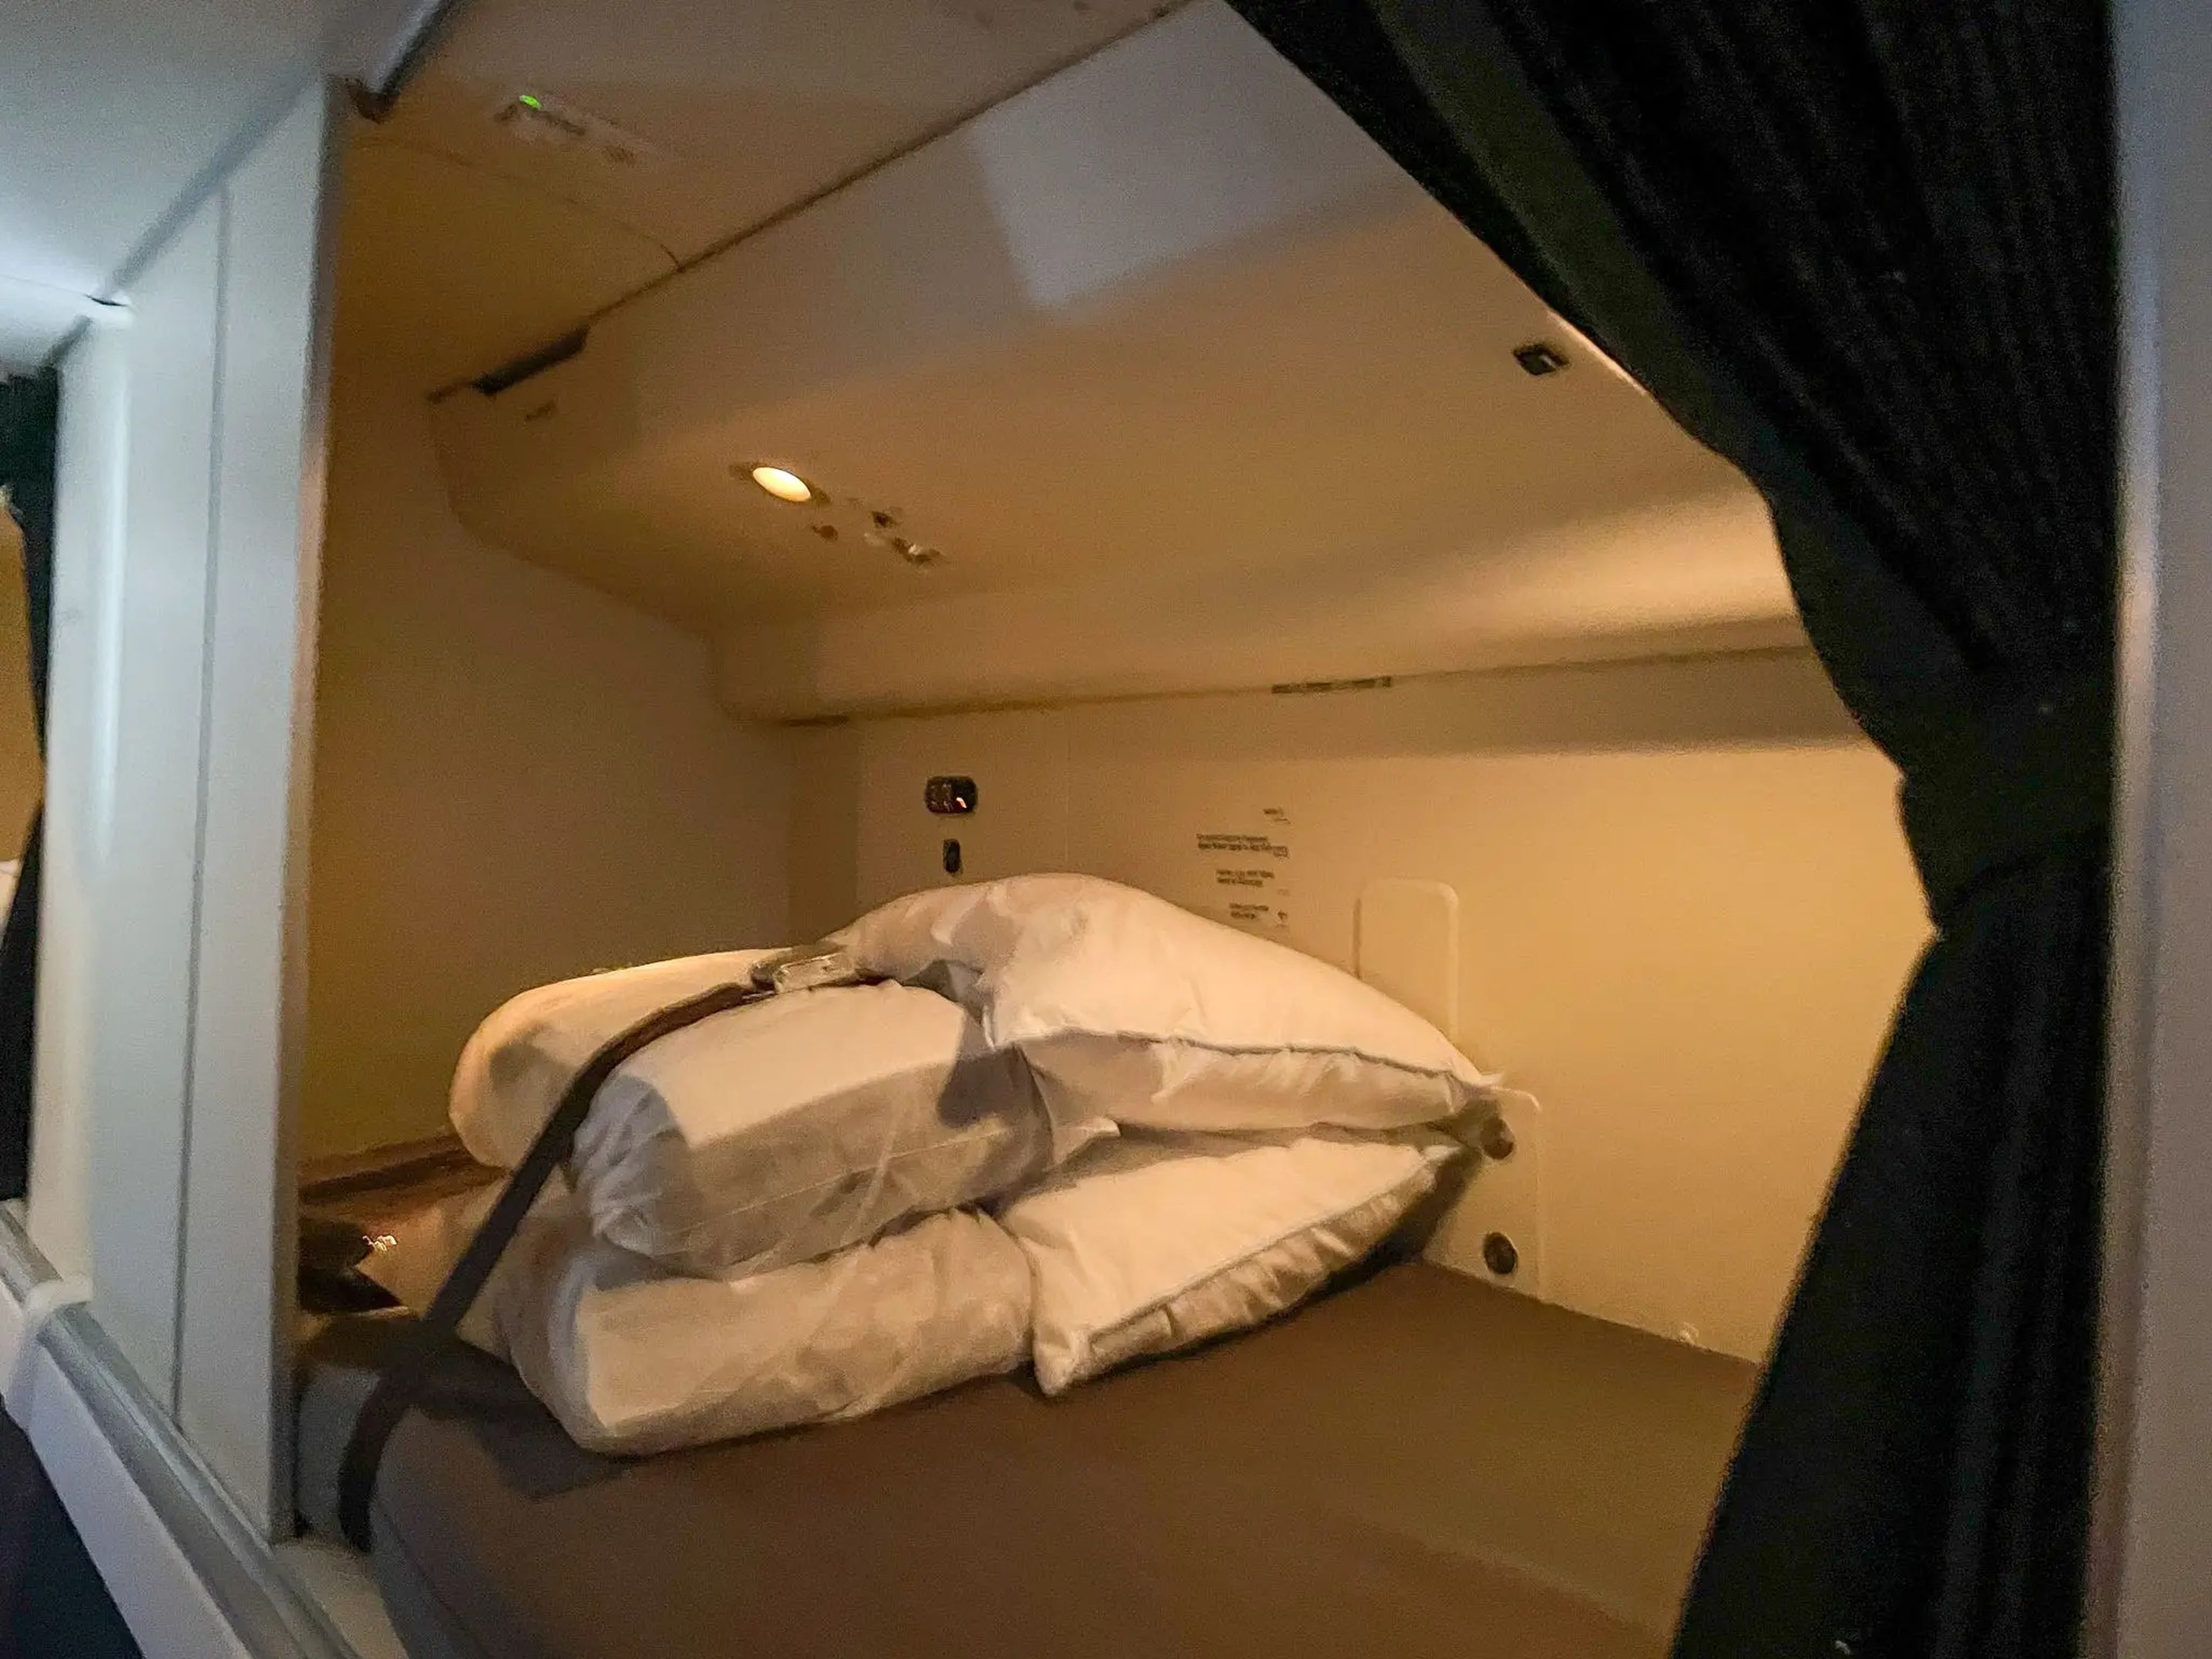 En cada zona de la cama, sólo había almohadas, mantas y algunos pequeños compartimentos de almacenamiento.